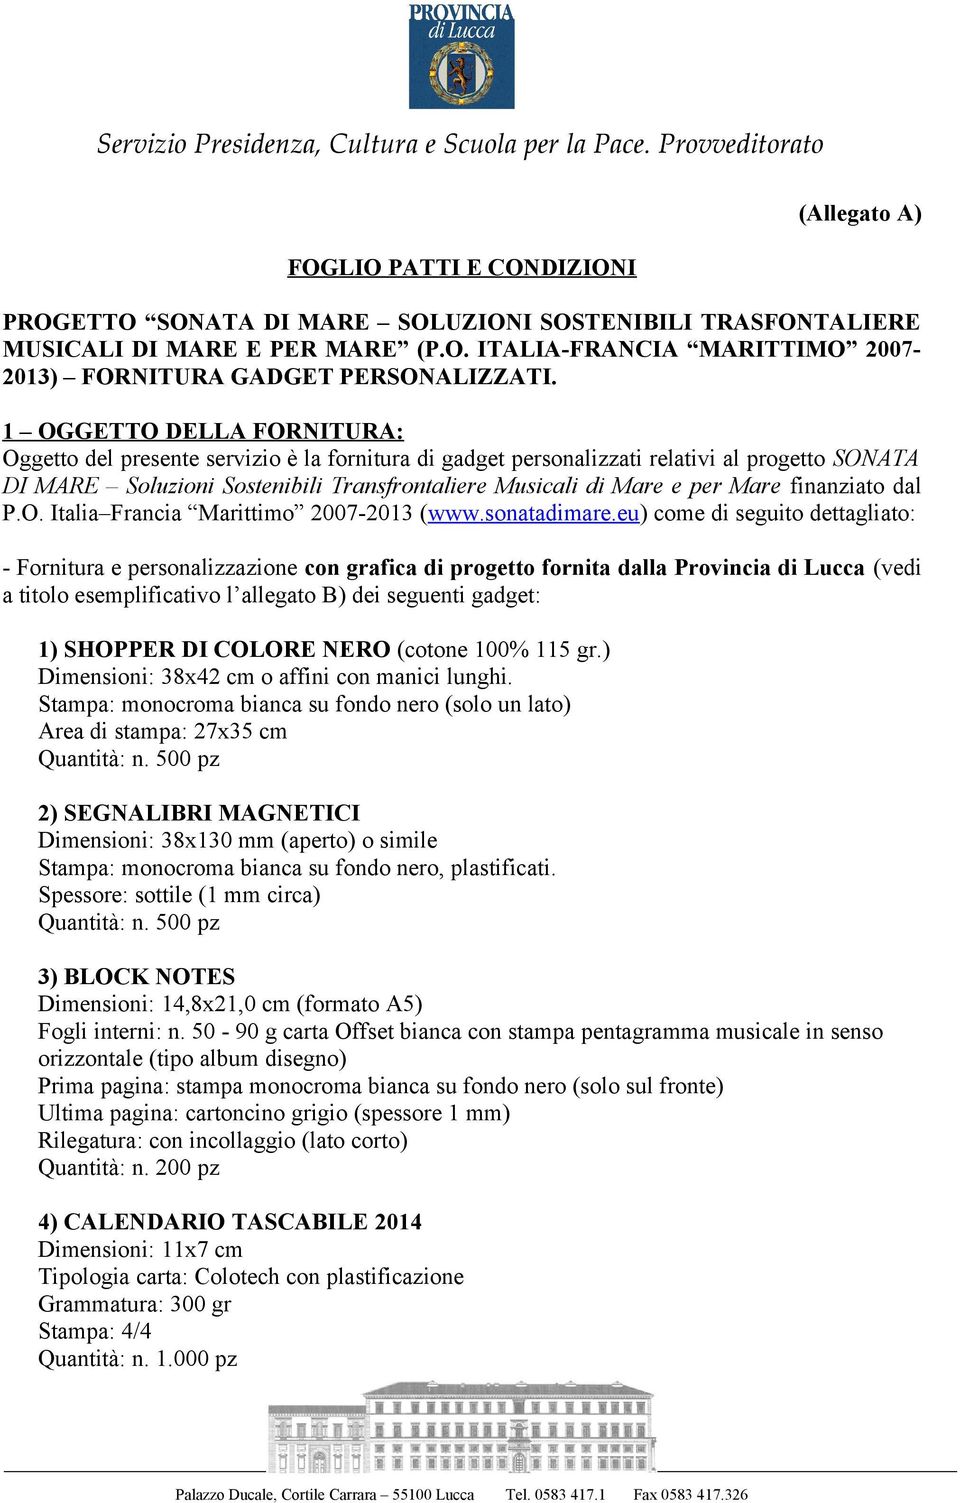 finanziato dal P.O. Italia Francia Marittimo 2007-2013 (www.sonatadimare.